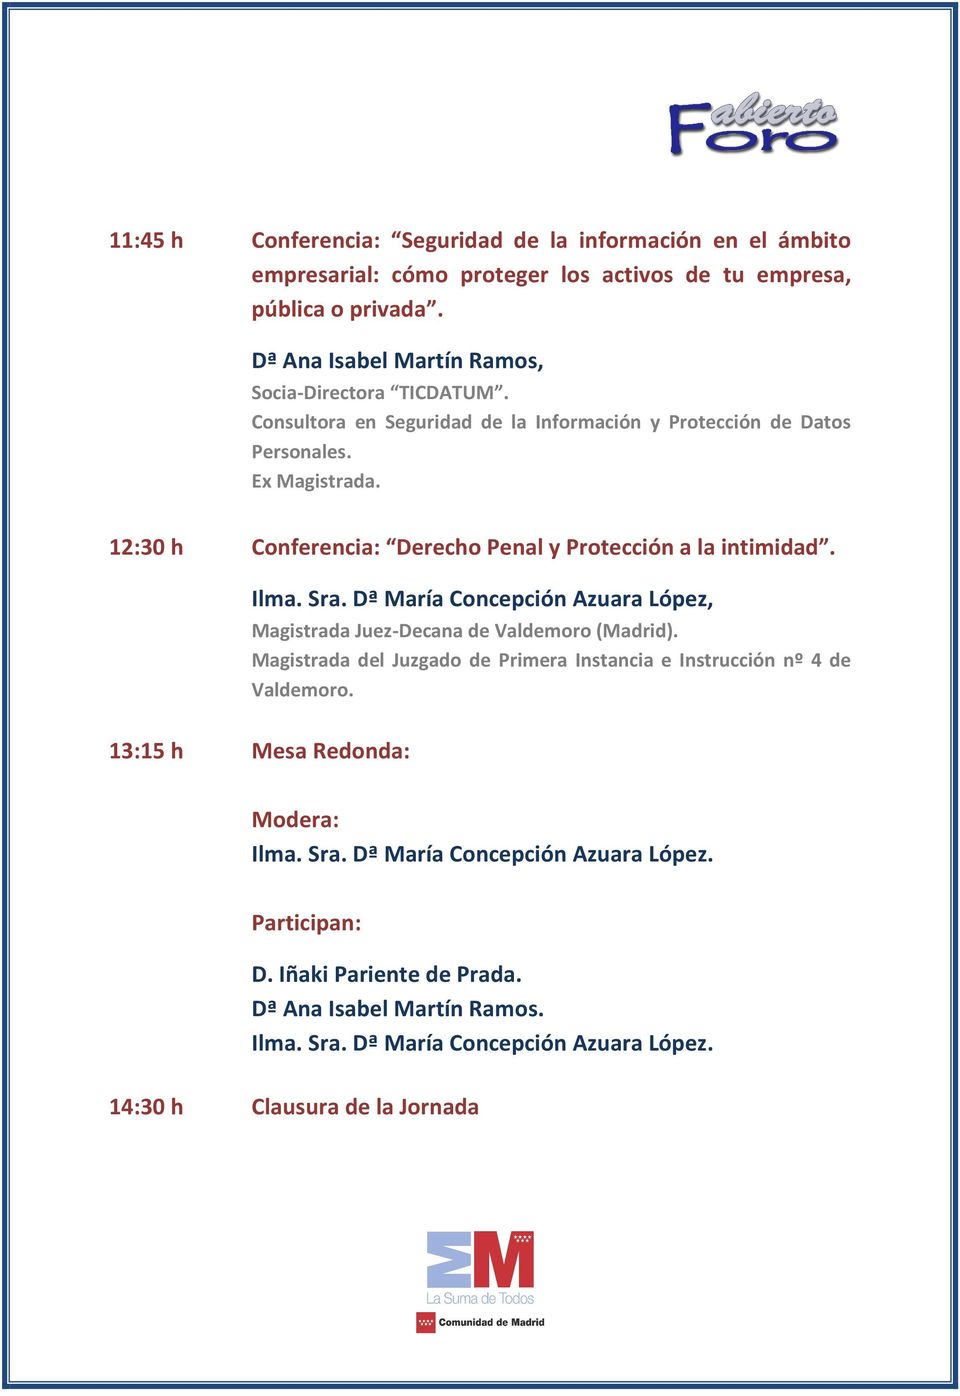 12:30 h Conferencia: Derecho Penal y Protección a la intimidad. Ilma. Sra. Dª María Concepción Azuara López, Magistrada Juez-Decana de Valdemoro (Madrid).